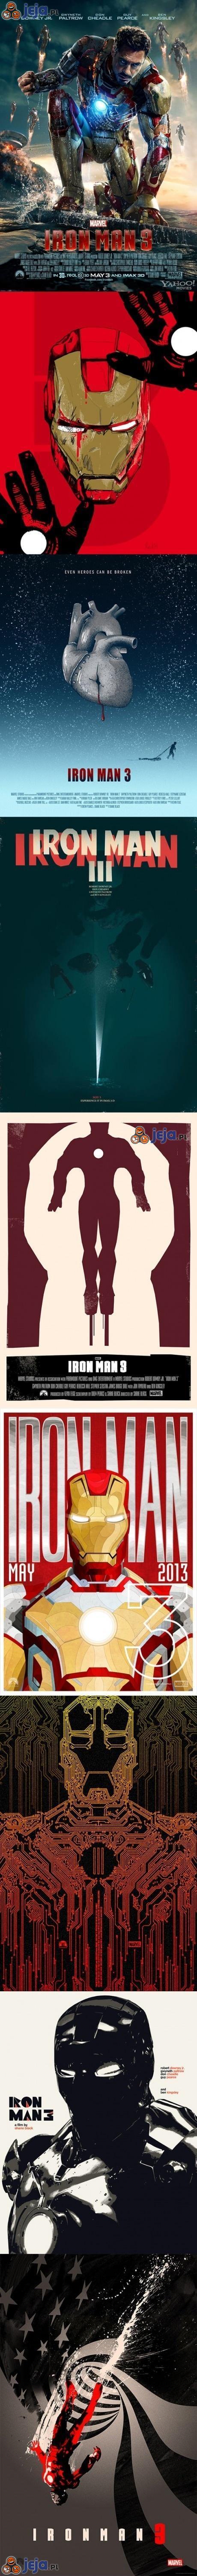 Iron Man 3 - alternatywne plakaty